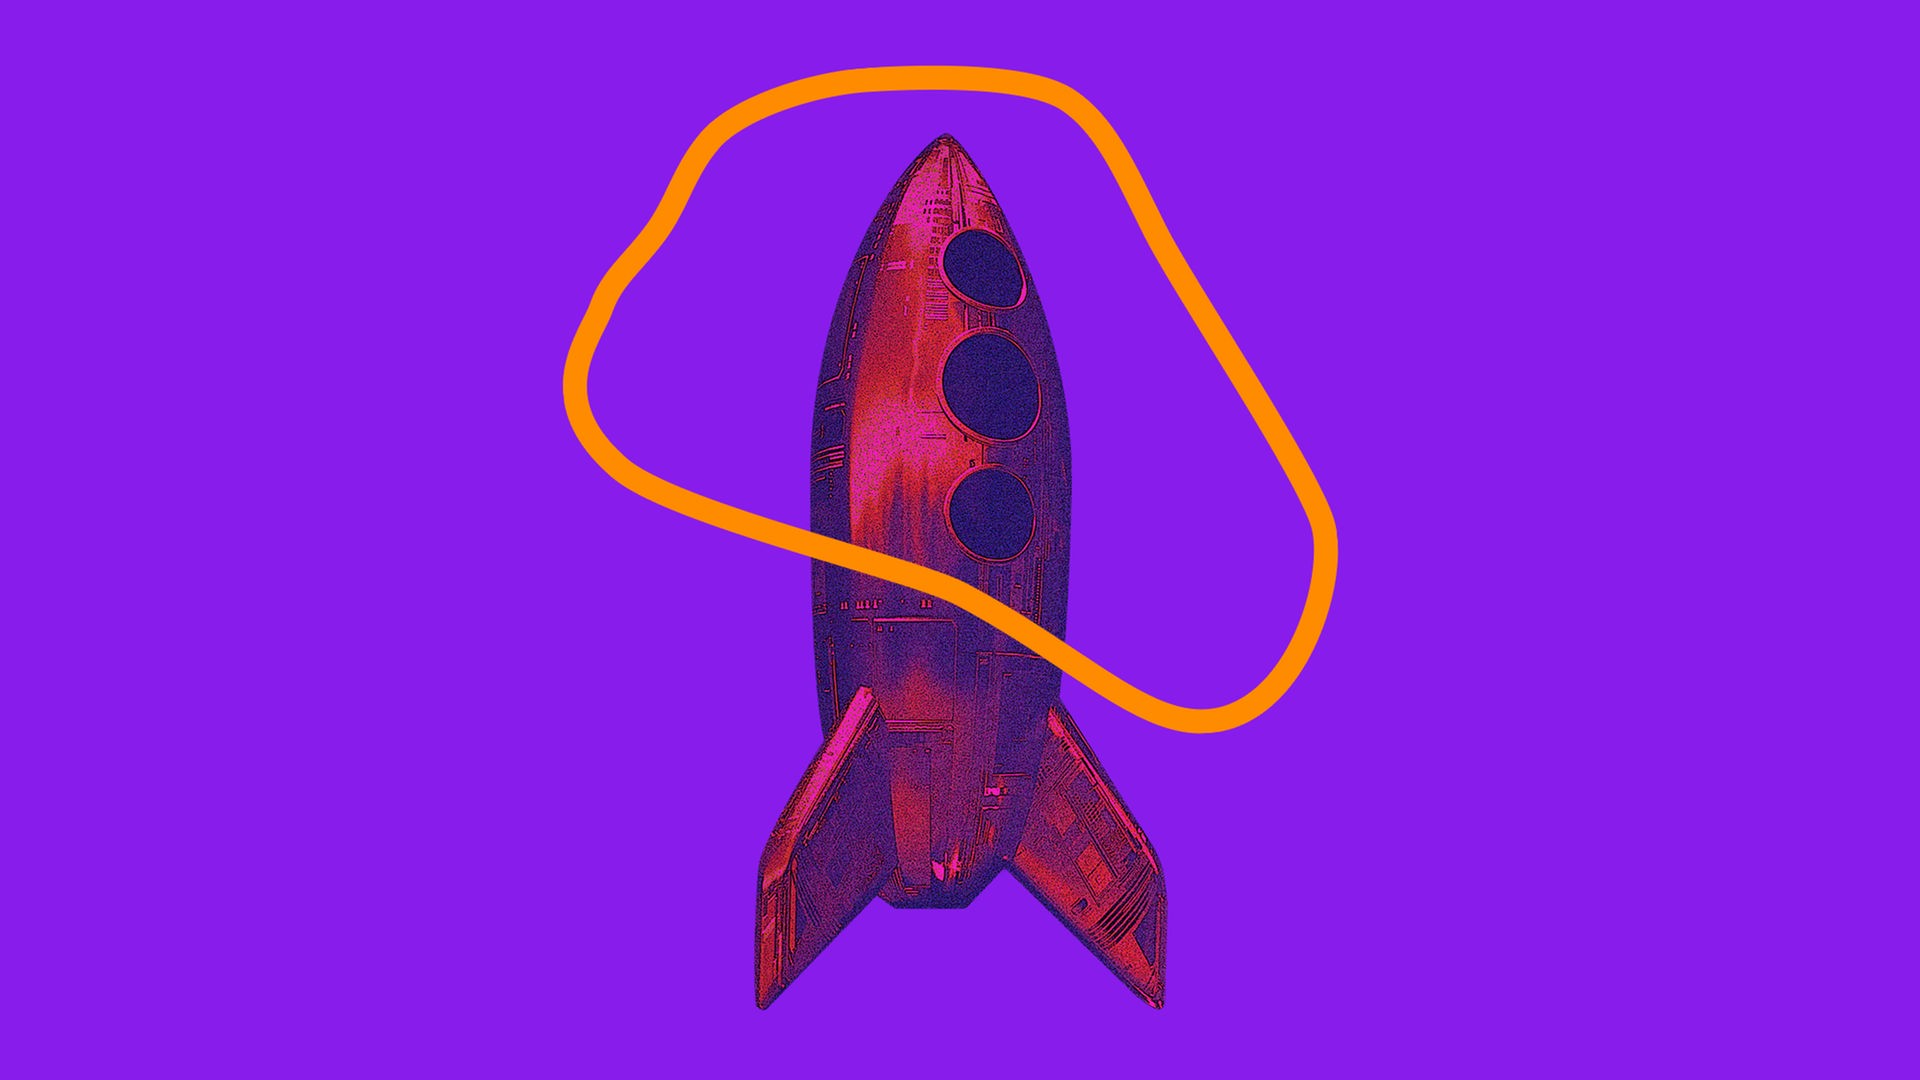 Das Bild zeigt eine stilisierte Rakete.